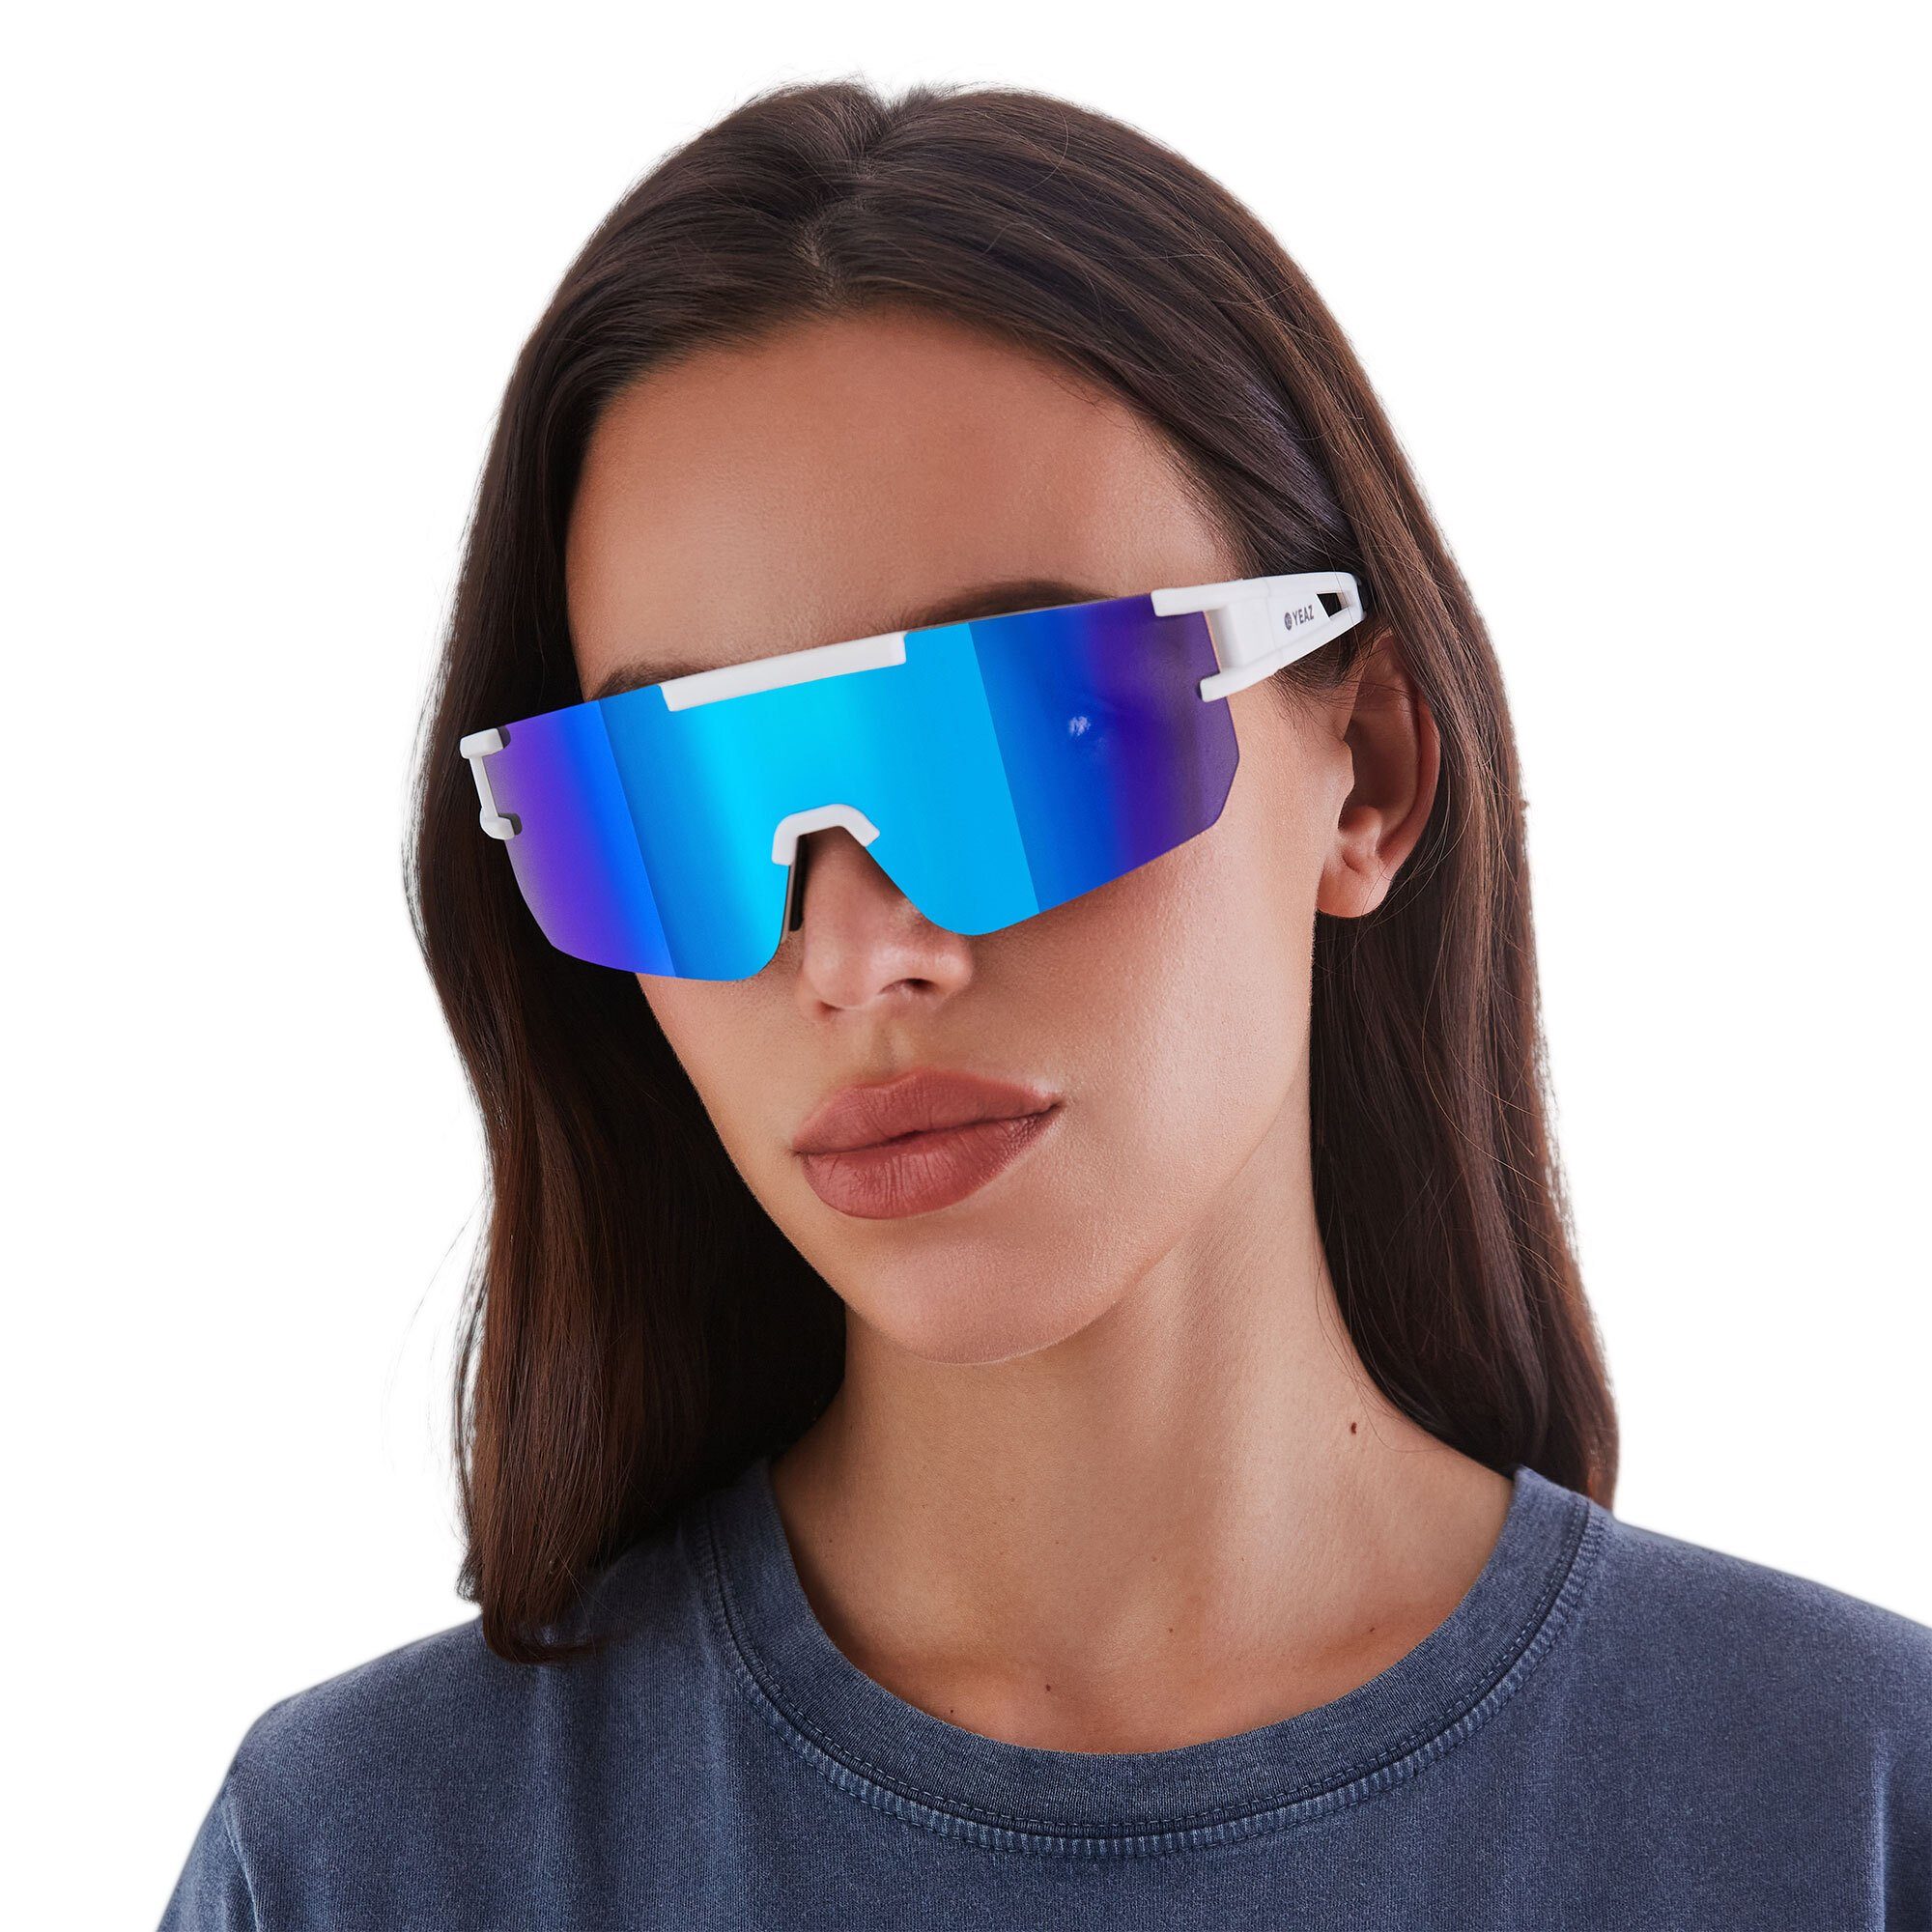 Sportbrille bright sport-sonnenbrille Sicht optimierter Guter SUNSPARK bei Schutz white/blue, YEAZ